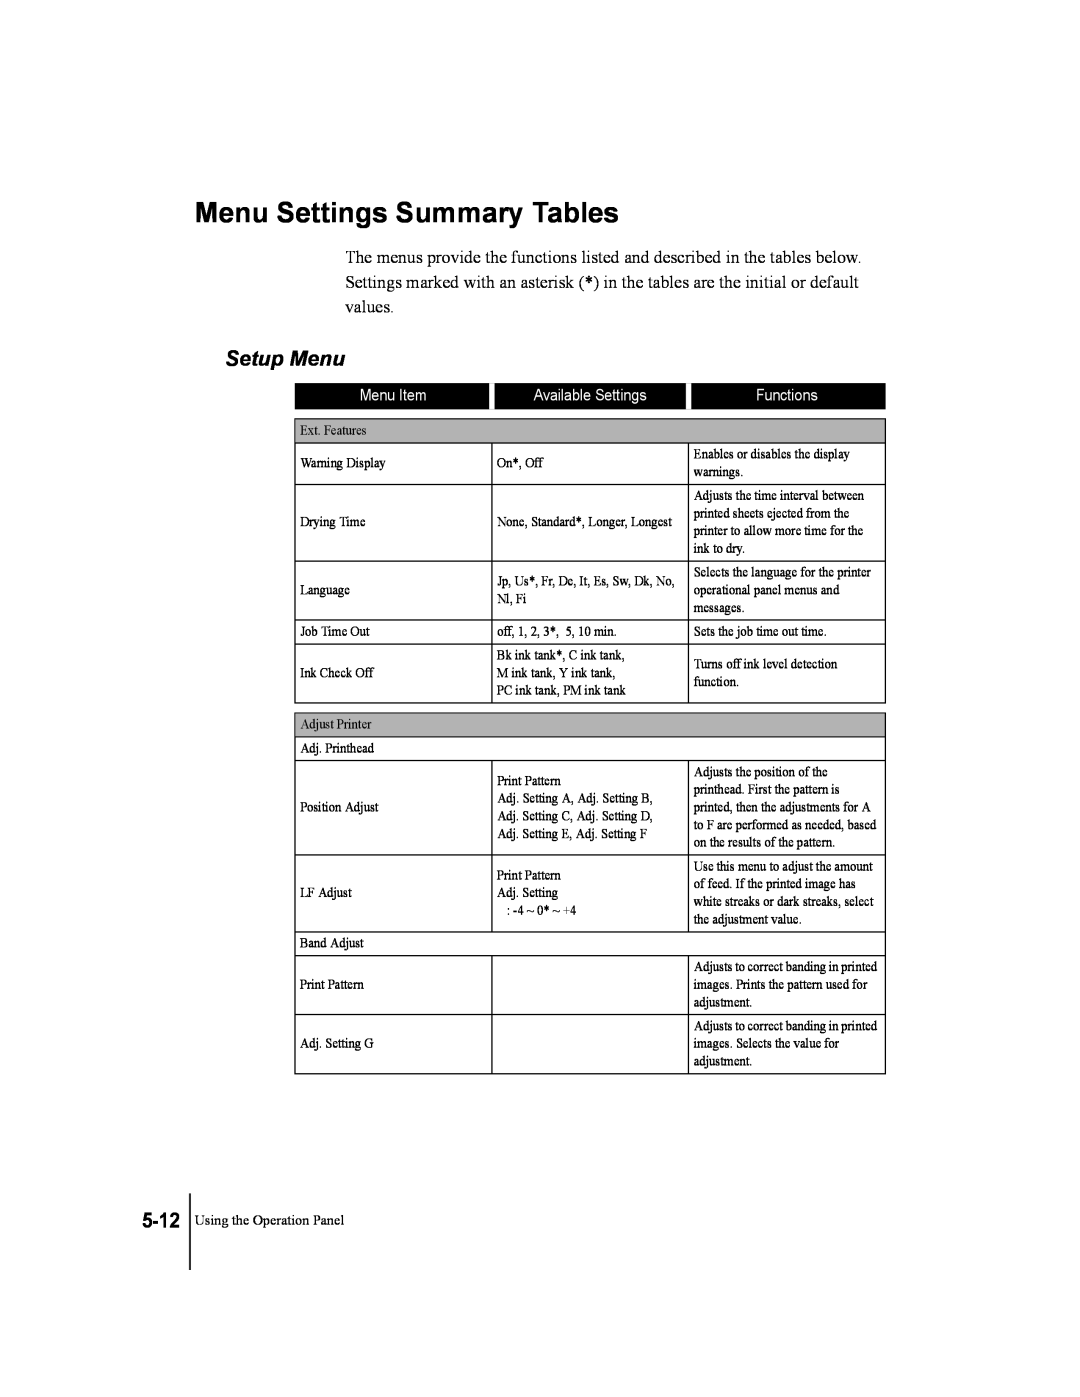 Canon W2200 manual Menu Settings Summary Tables, Setup Menu, 5-12, Menu Item, Available Settings, Functions 